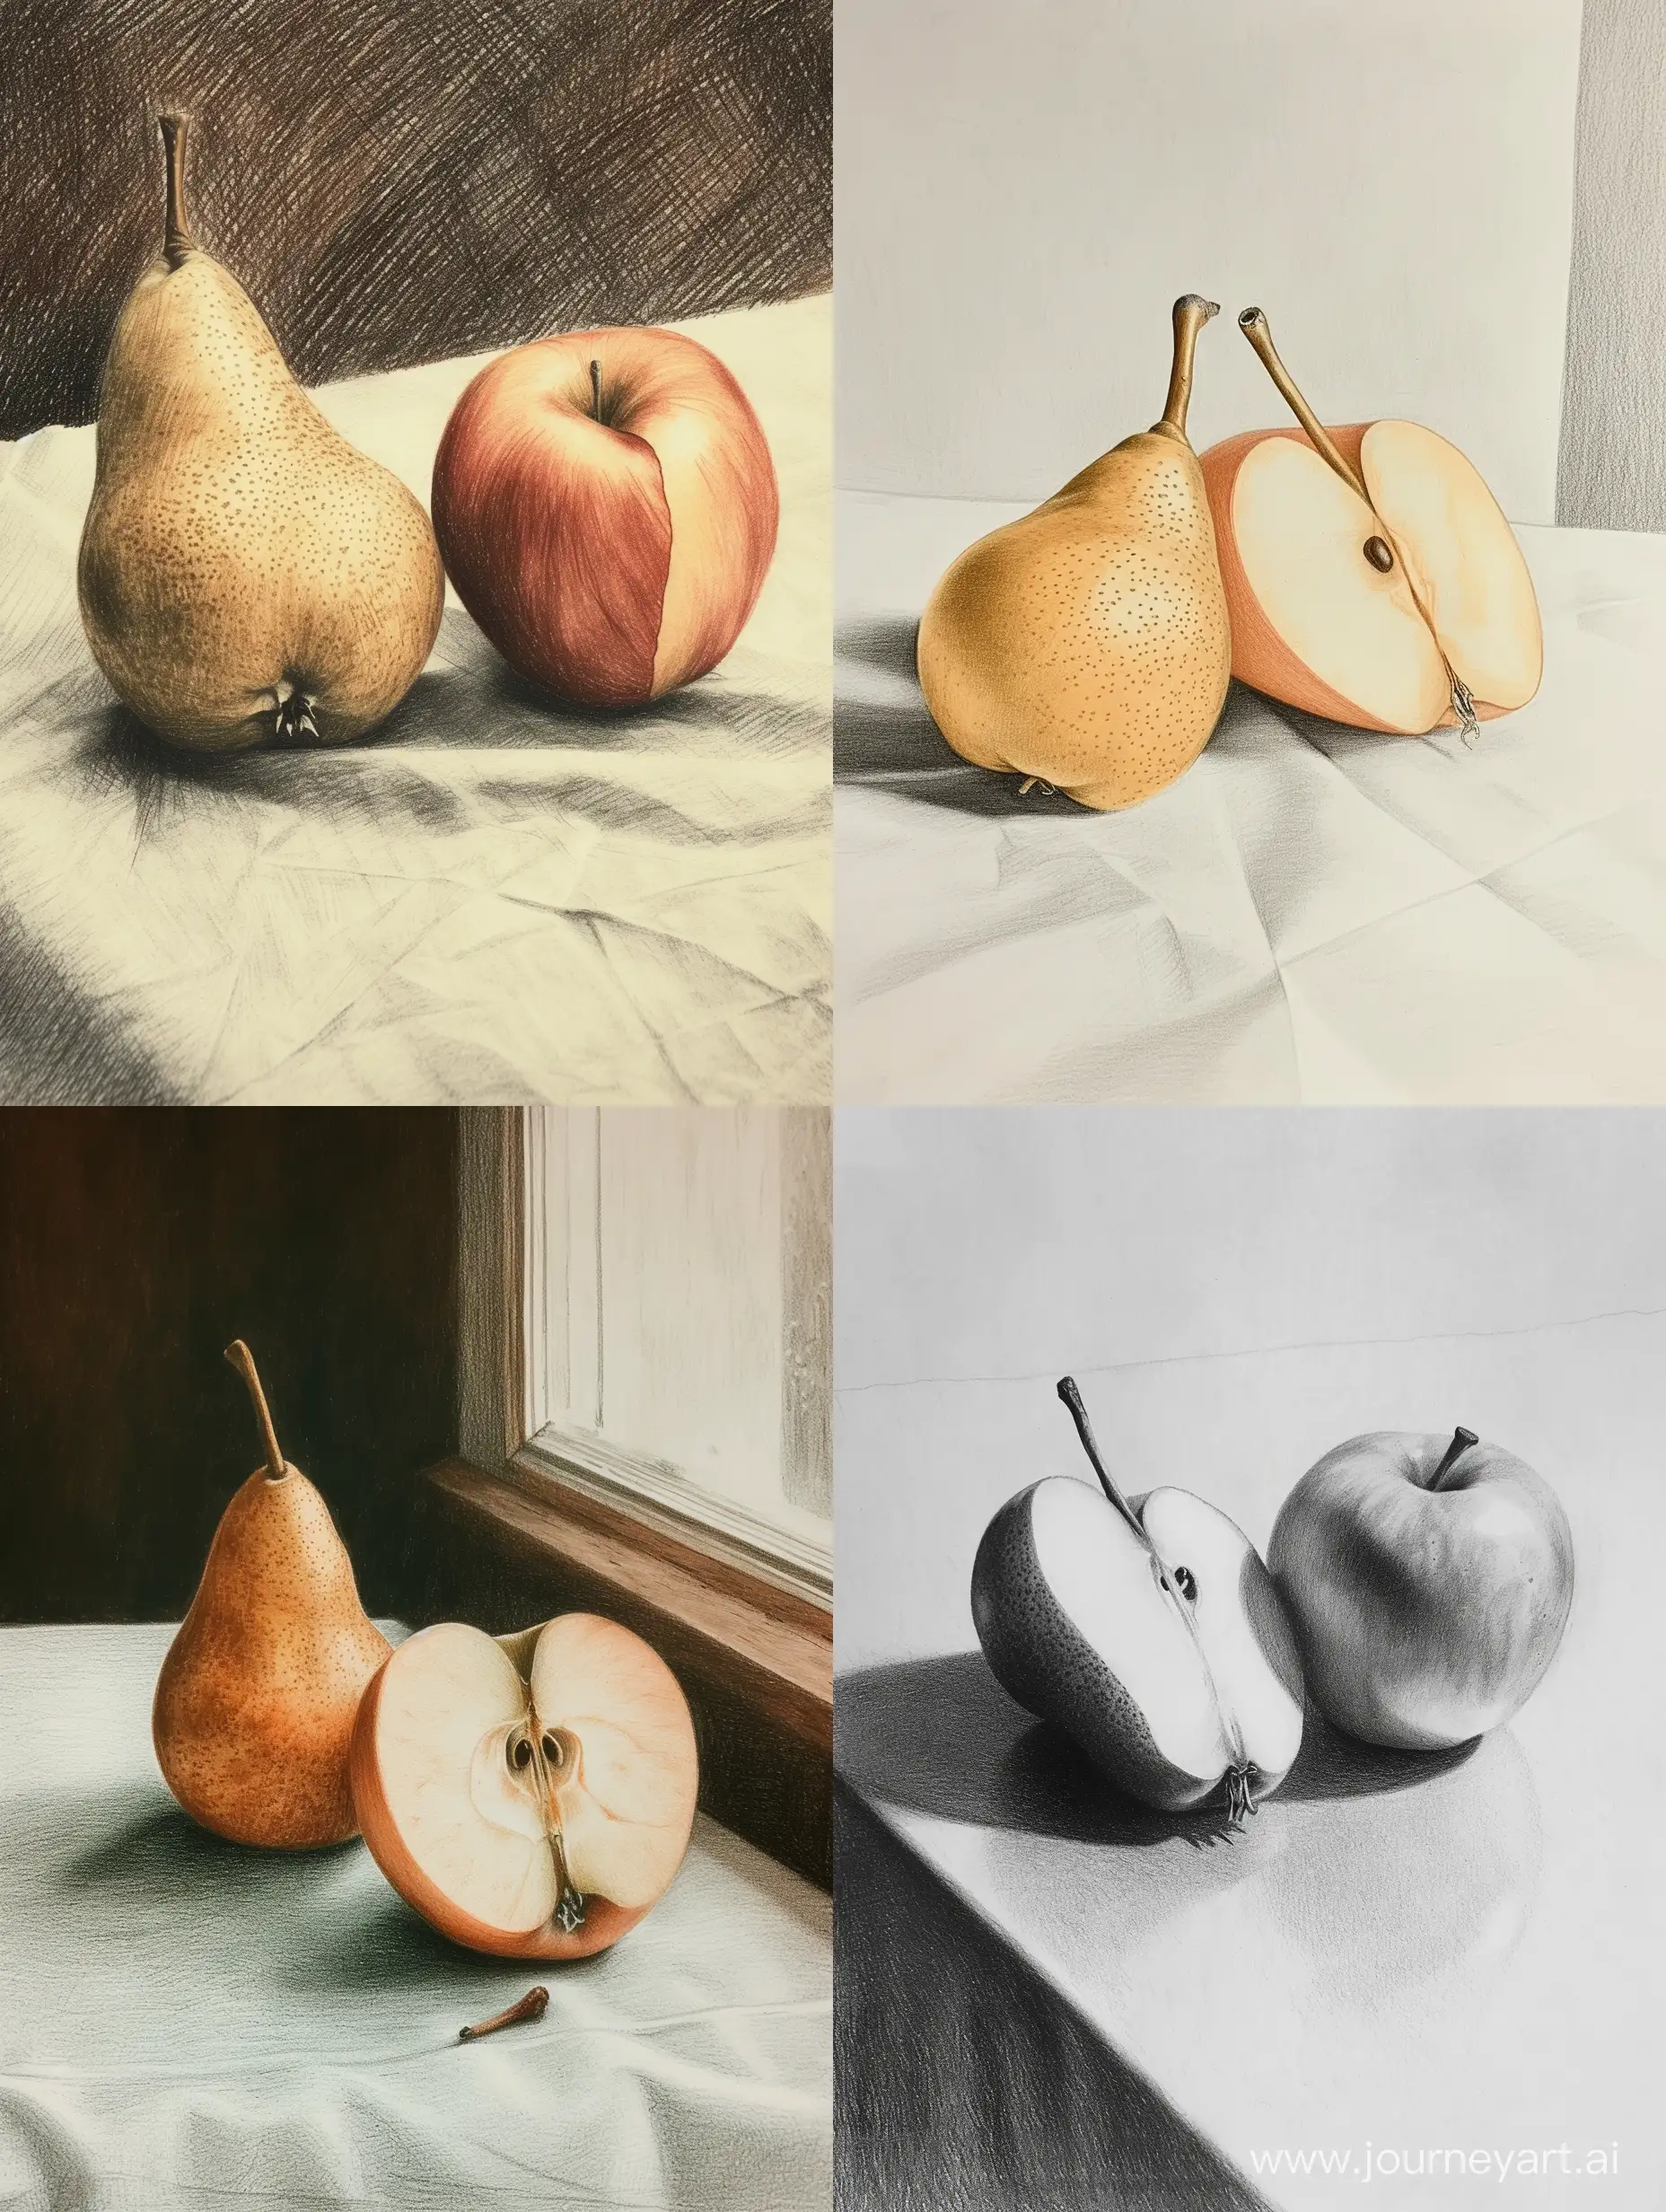 zeichne eine Frucht, deren rechte Hälfte ein Apfel ist, die linke Hälfte ist eine Birne. Sie liegt auf einem Tisch. fotorealistisch.